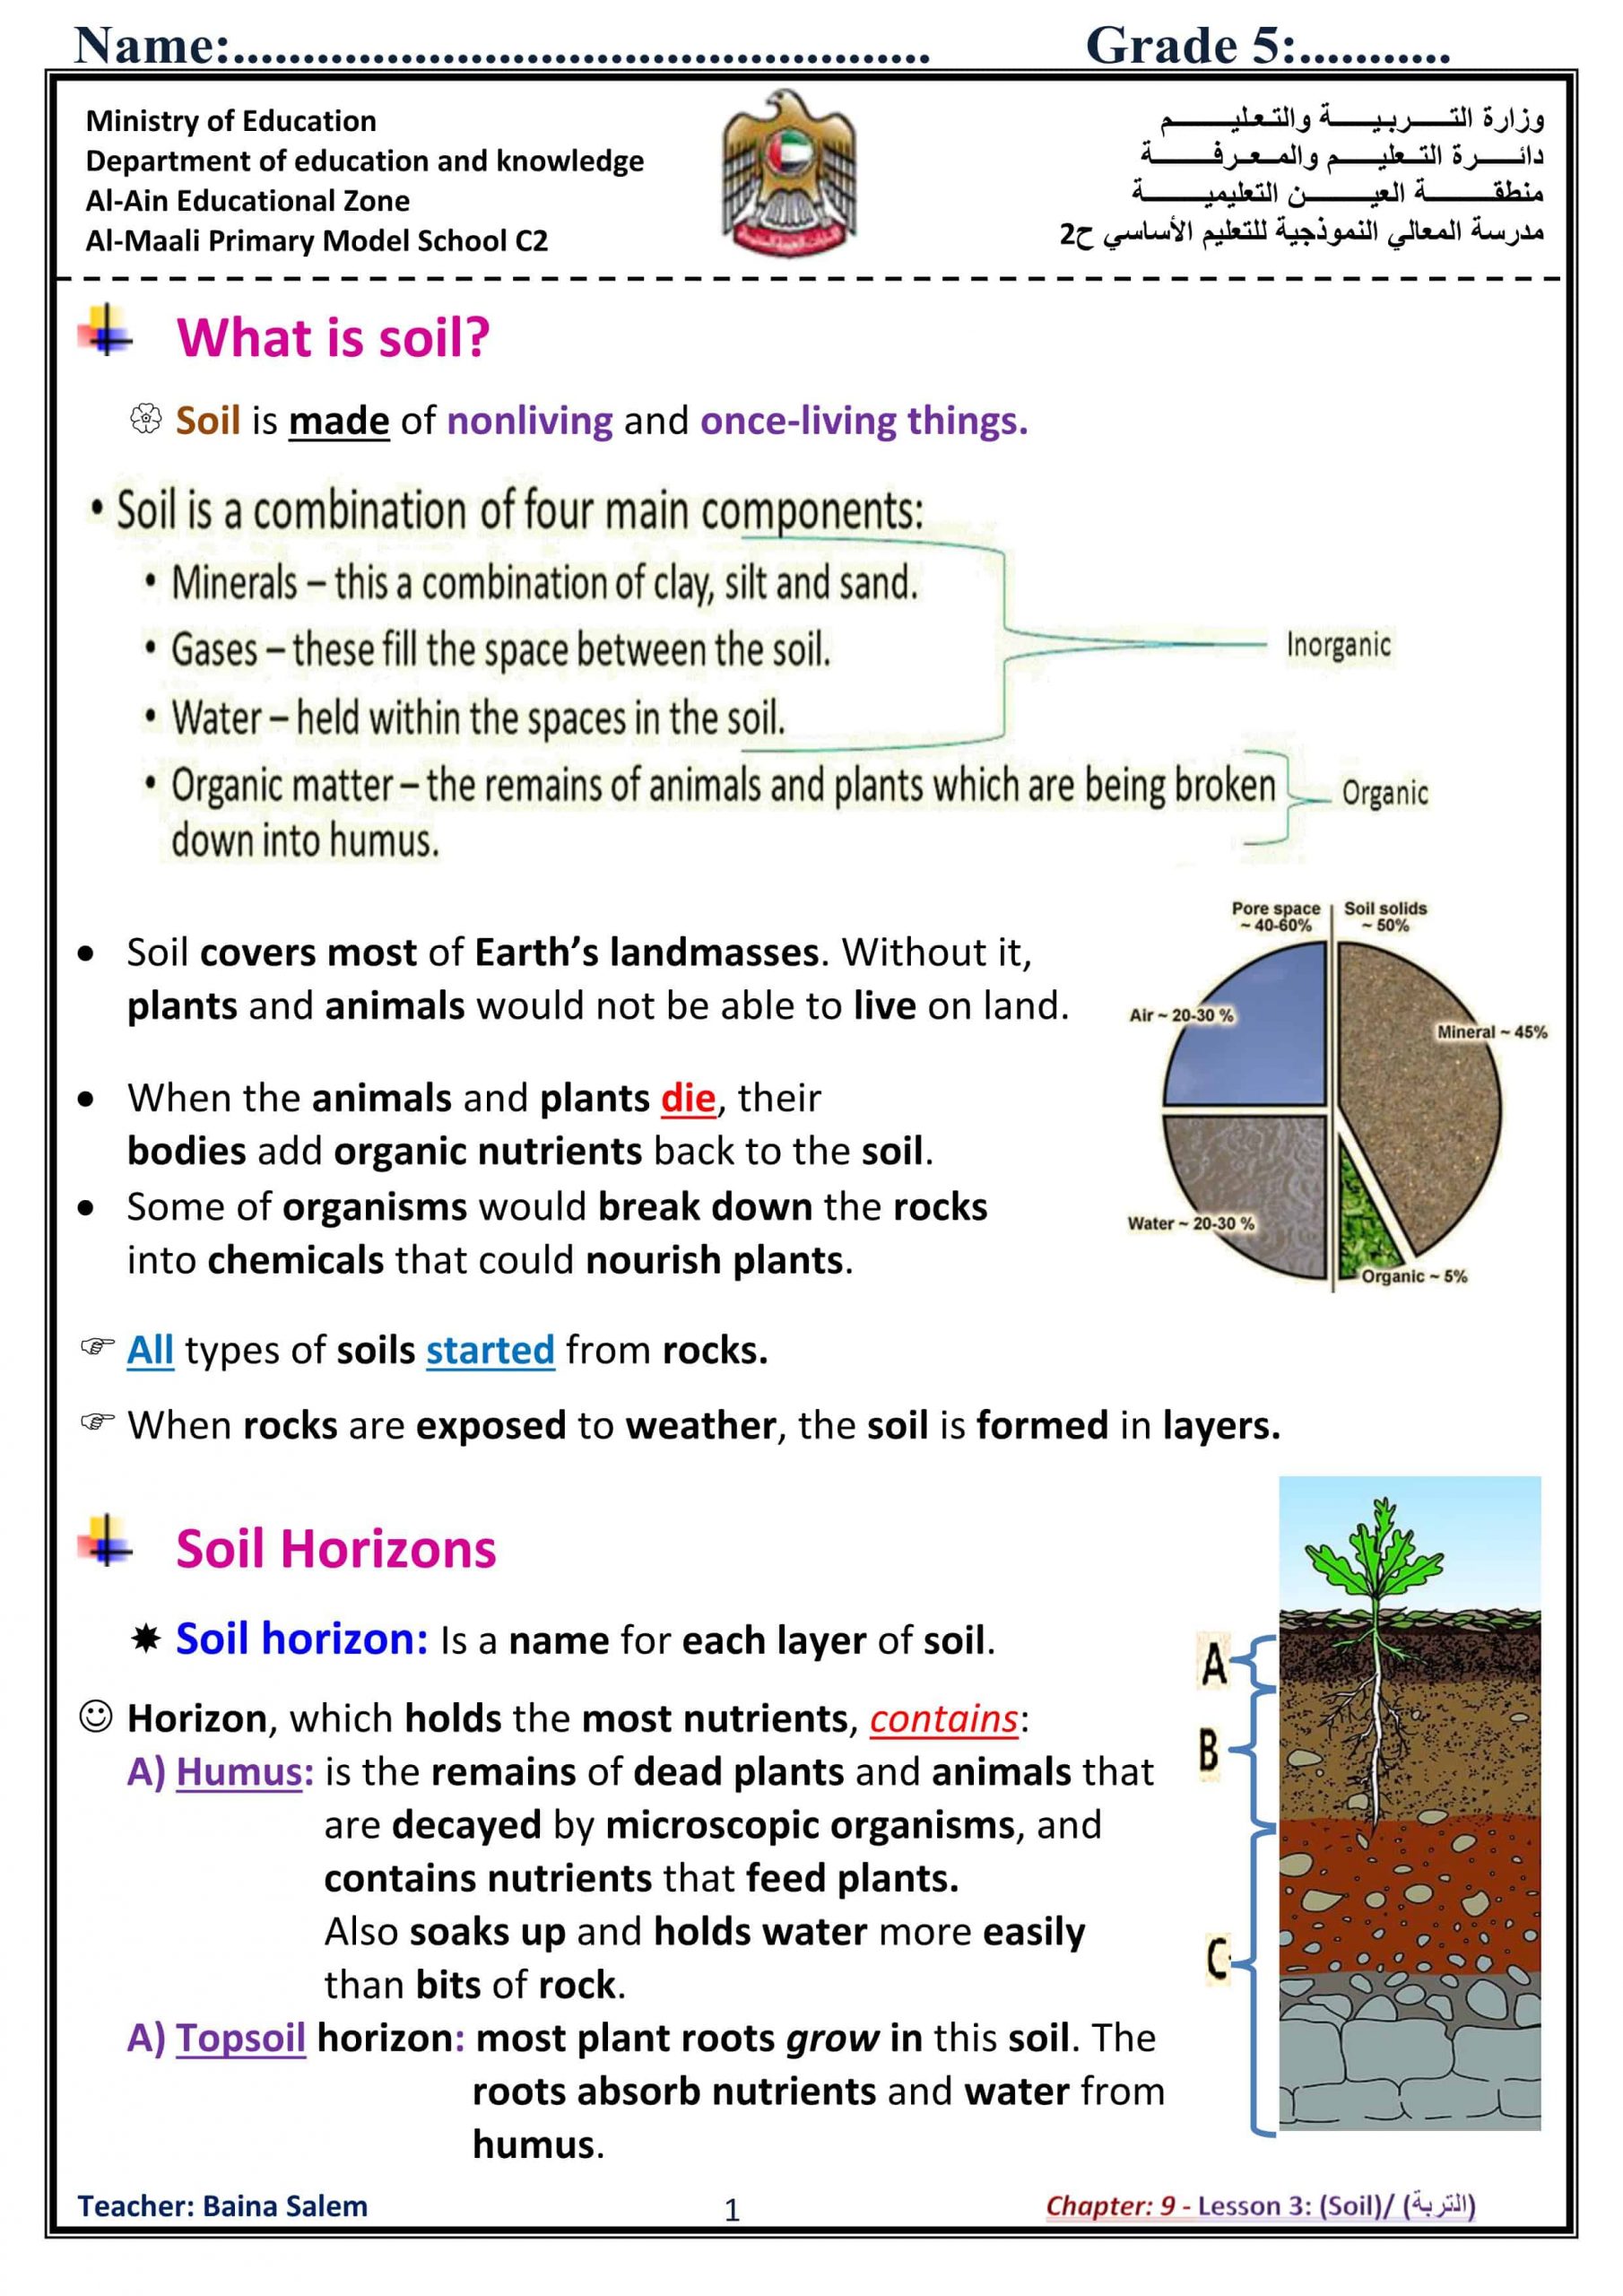 ملخص درس soil بالإنجليزي الصف الخامس مادة العلوم المتكاملة 